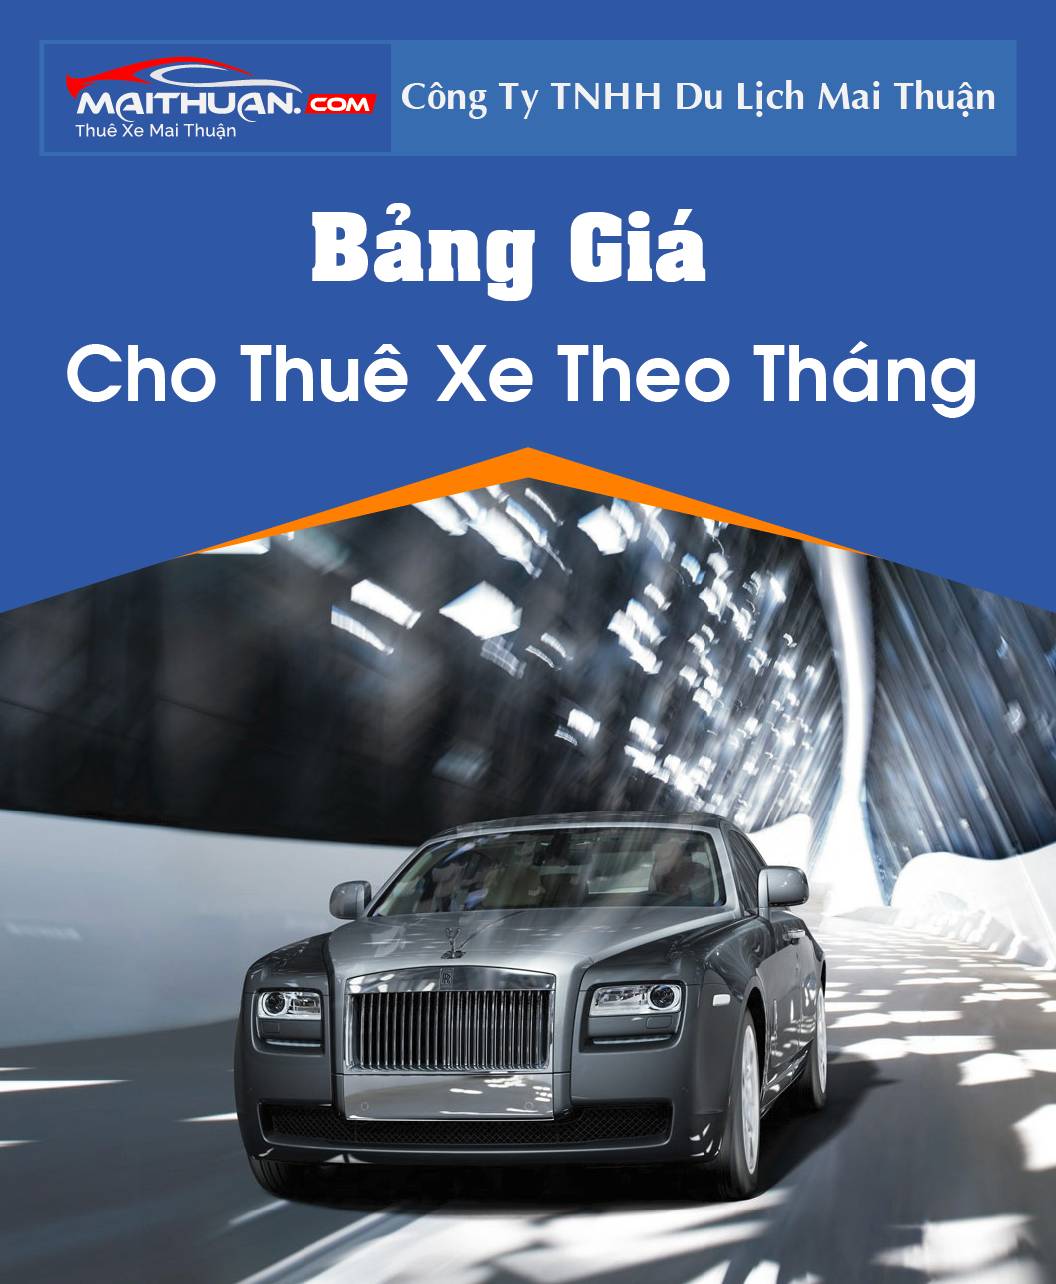 Thuê Xe Mai Thuận - Thuê xe tự lái du lịch giá rẻ TPHCM